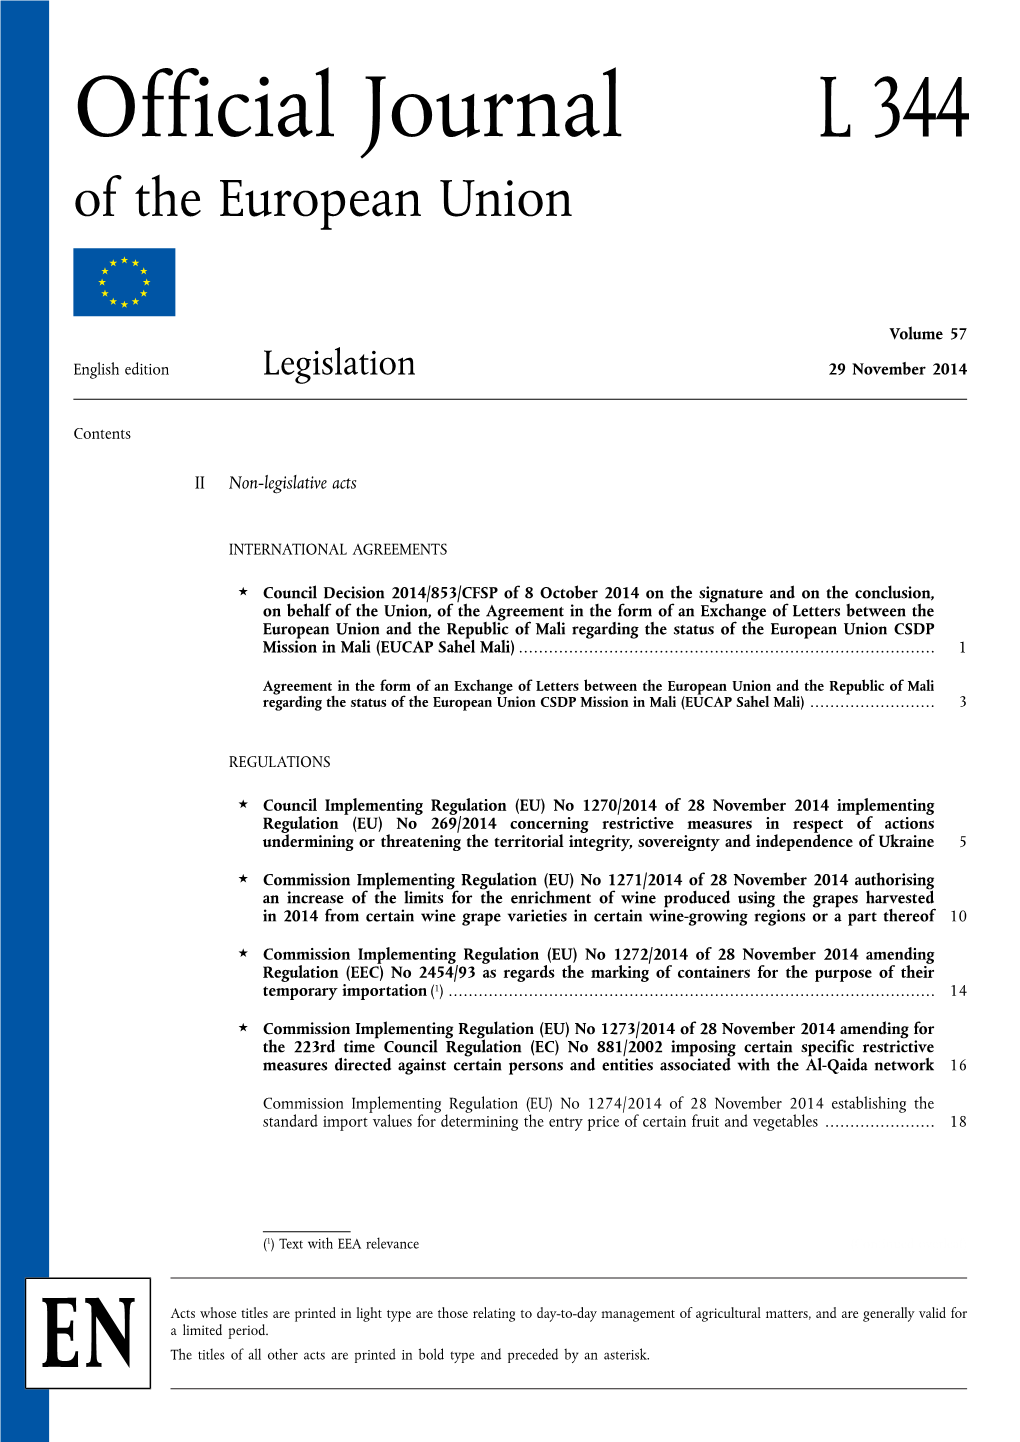 Council Implementing Regulation (EU) No 1270/2014